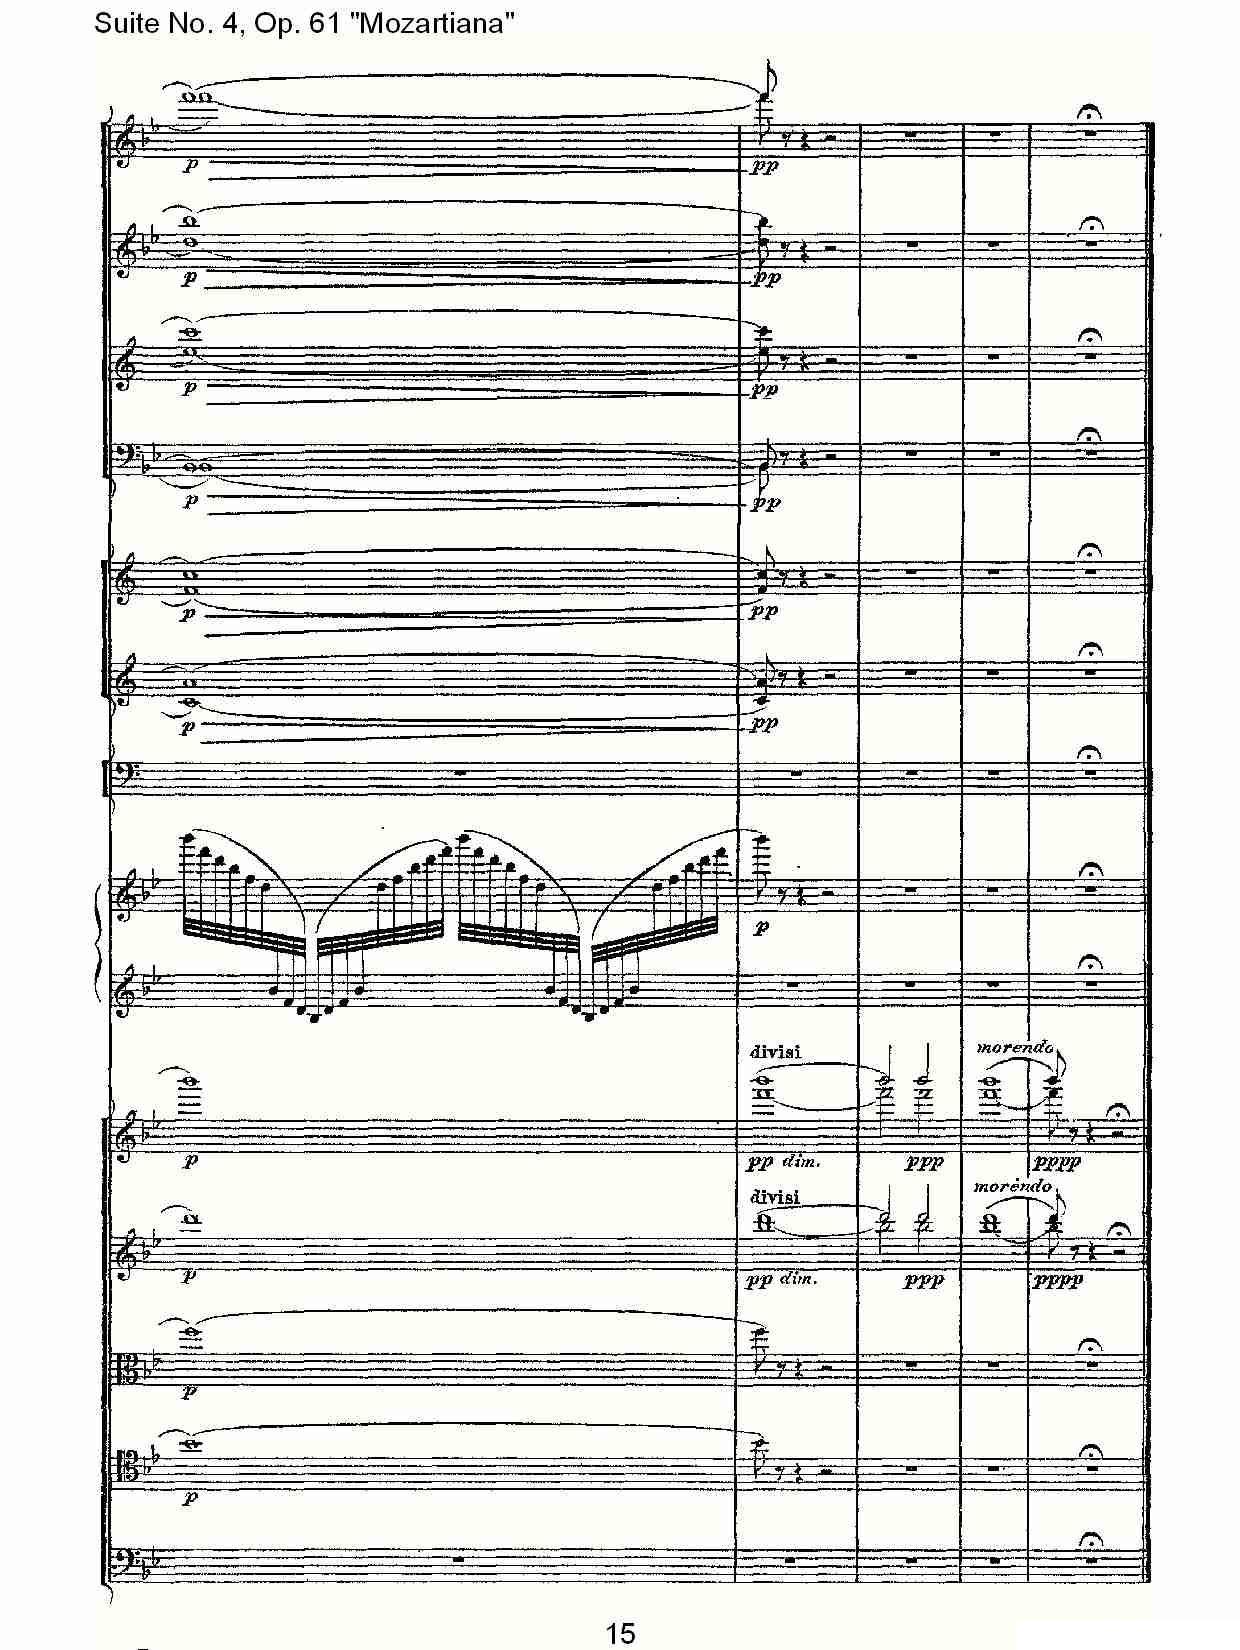 Suite No. 4, Op.61其它曲谱（图15）